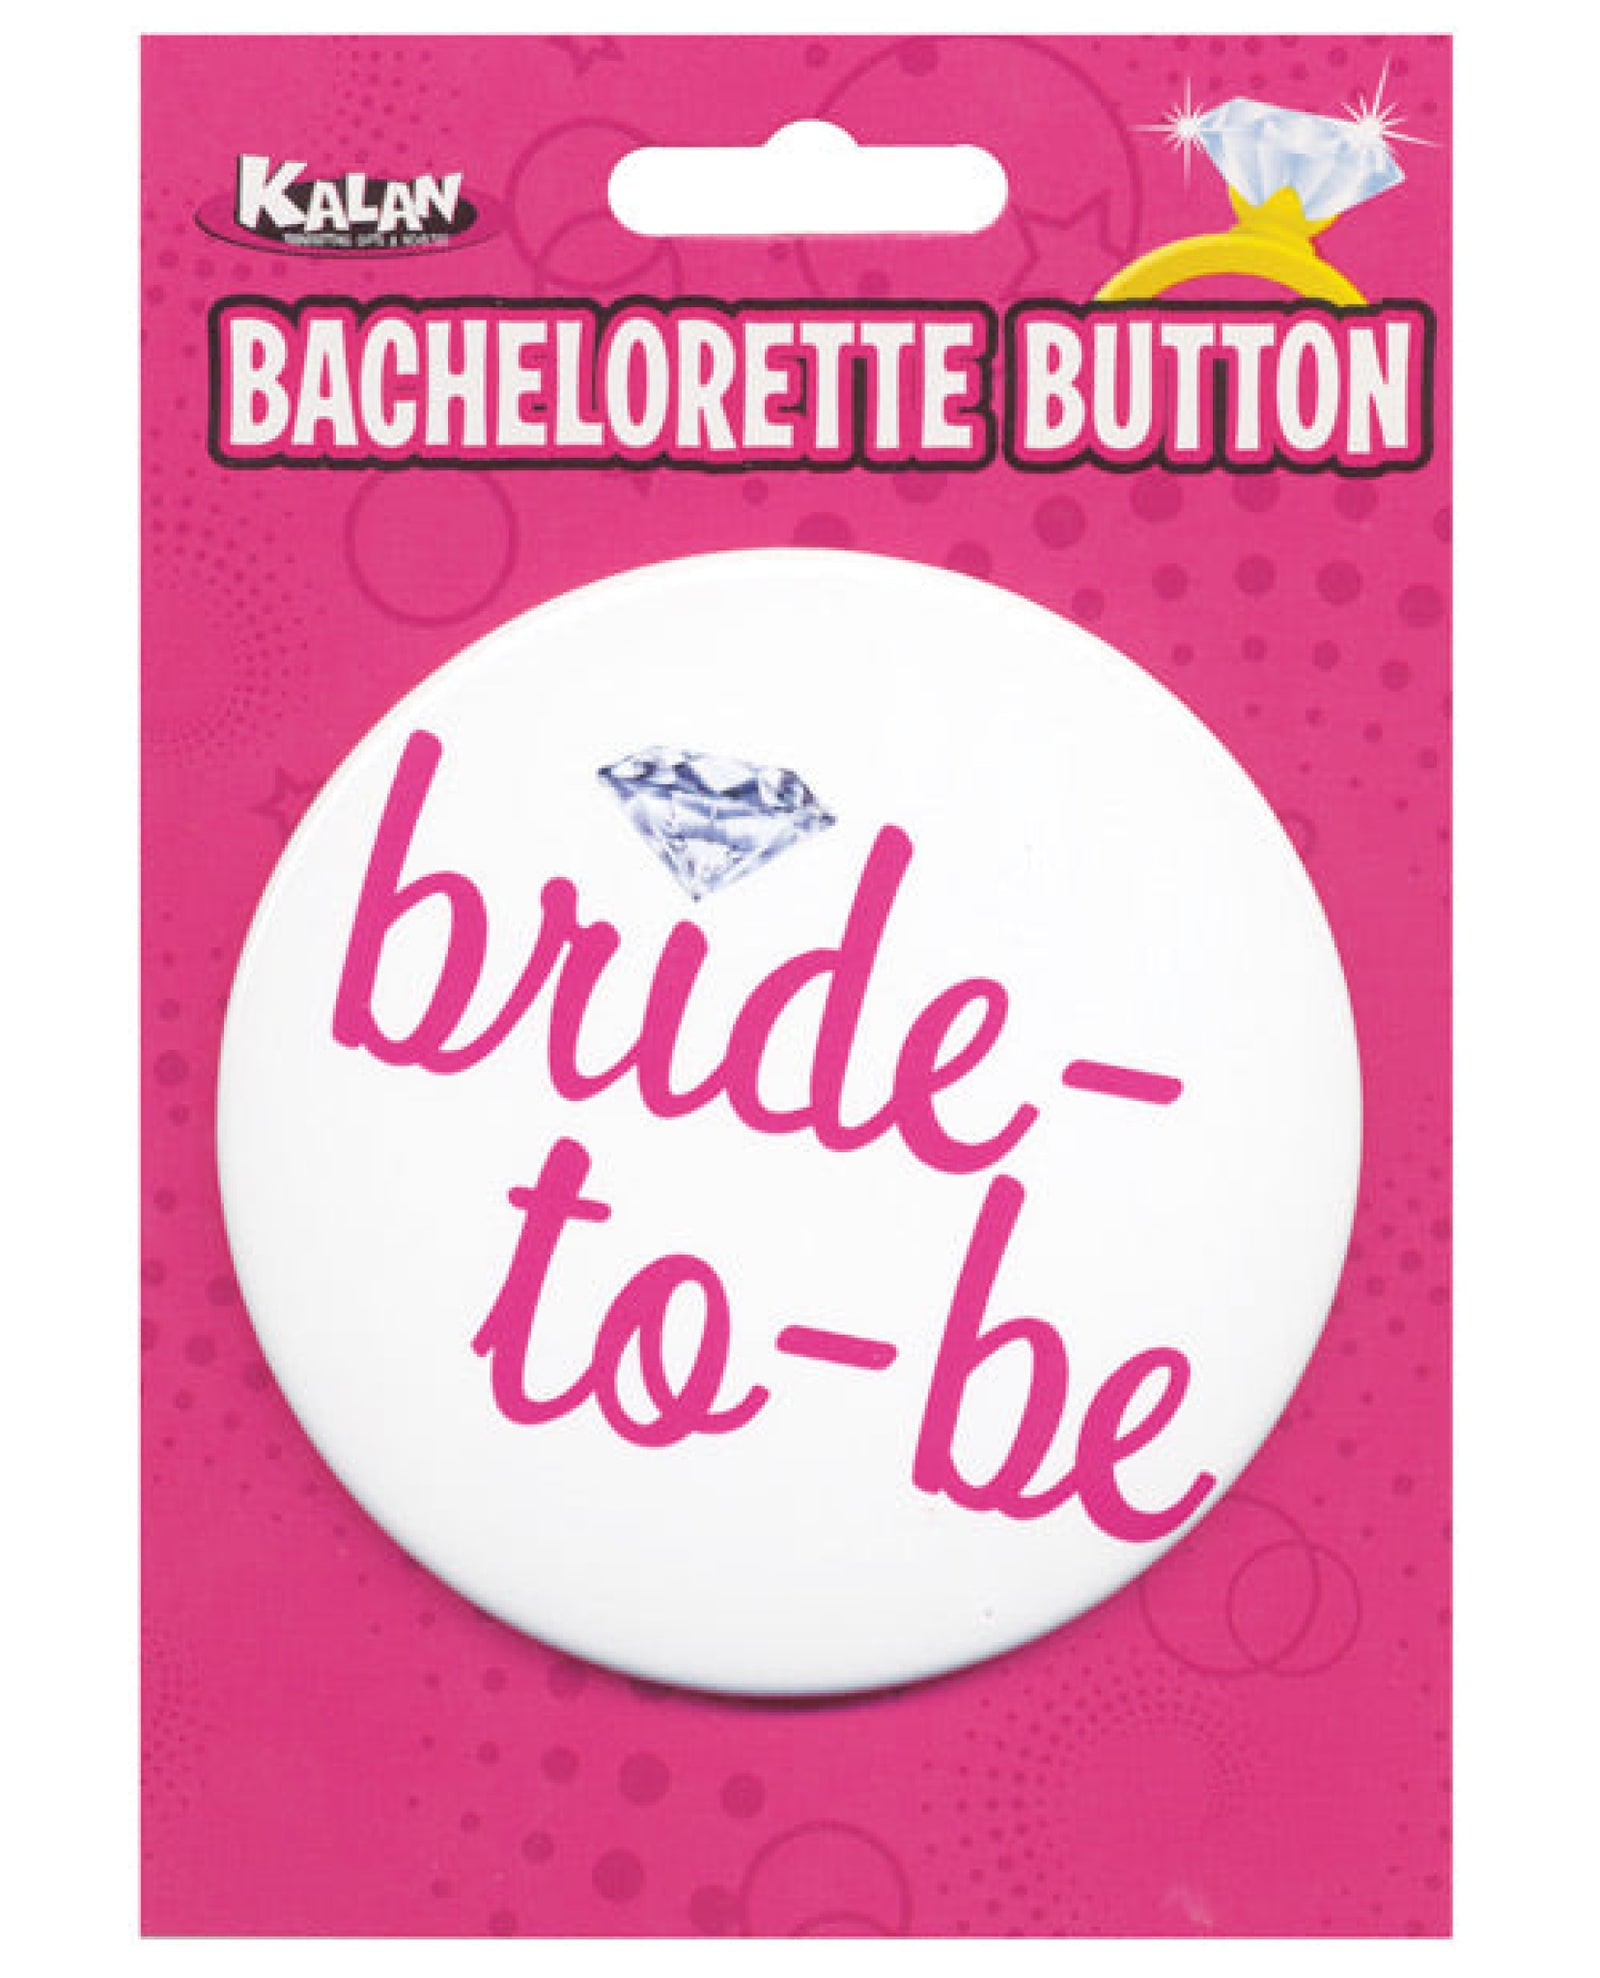 Bachelorette Button - Bride-to-be Kalan